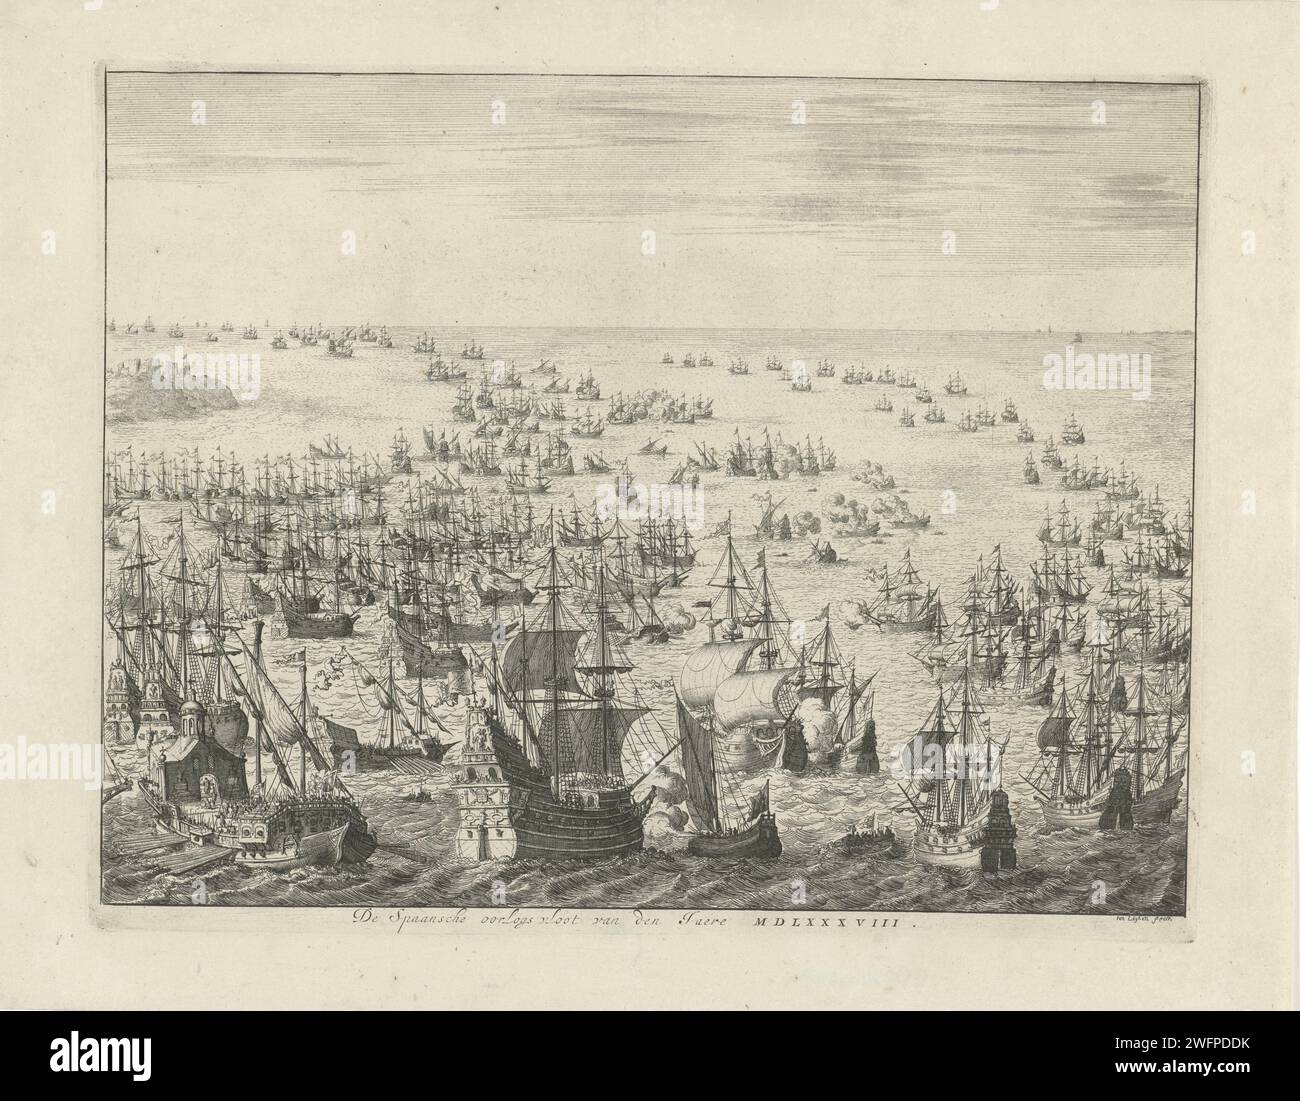 Chute de l'Armada espagnole, 1588, Jan Luyken, 1679 - 1684 Imprimer chute de l'Armada espagnole ou flotte invincible, entre le 31 juillet et le 12 août 1588. Bataille maritime entre les flottes espagnole et anglaise et néerlandaise combinées dans le canal. Au premier plan, une grande frégate espagnole est tirée par un petit navire hollandais avec la bannière de la ville de Leiden, un Galei sur la gauche. Bataille de gravure sur papier Amsterdam (+ force navale) Manche Banque D'Images